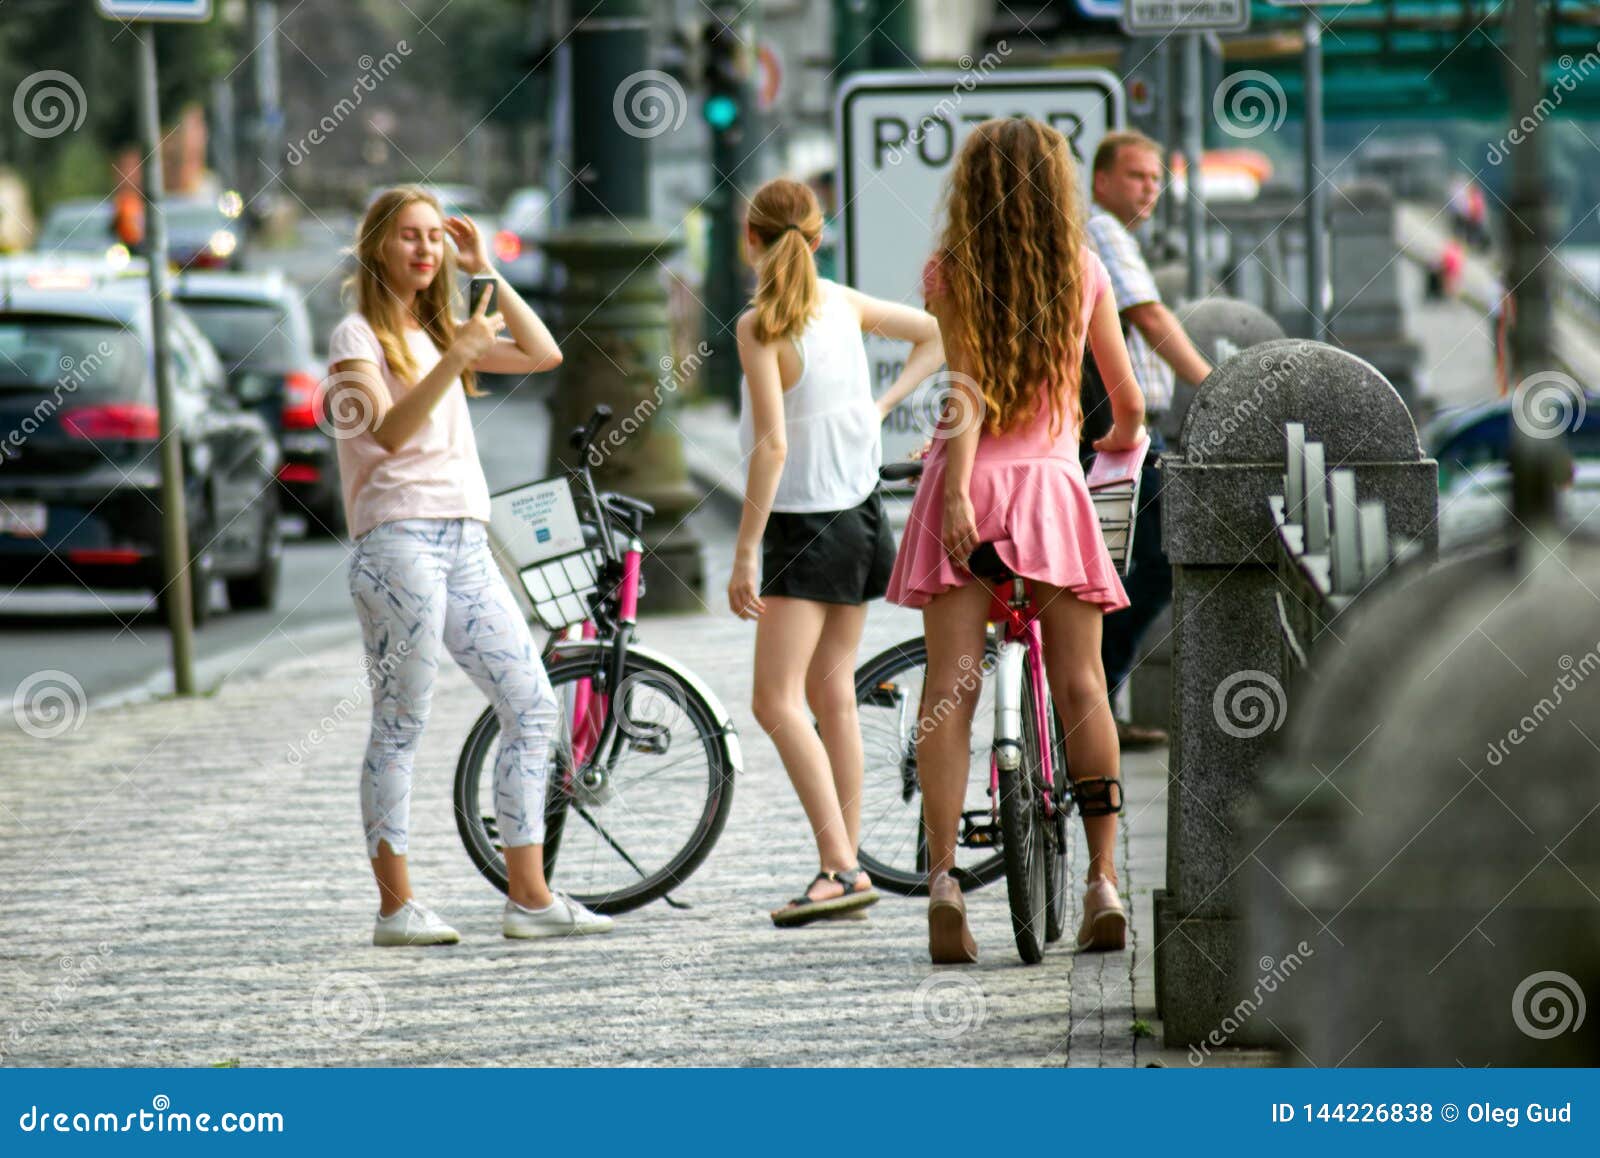 Czech street girls